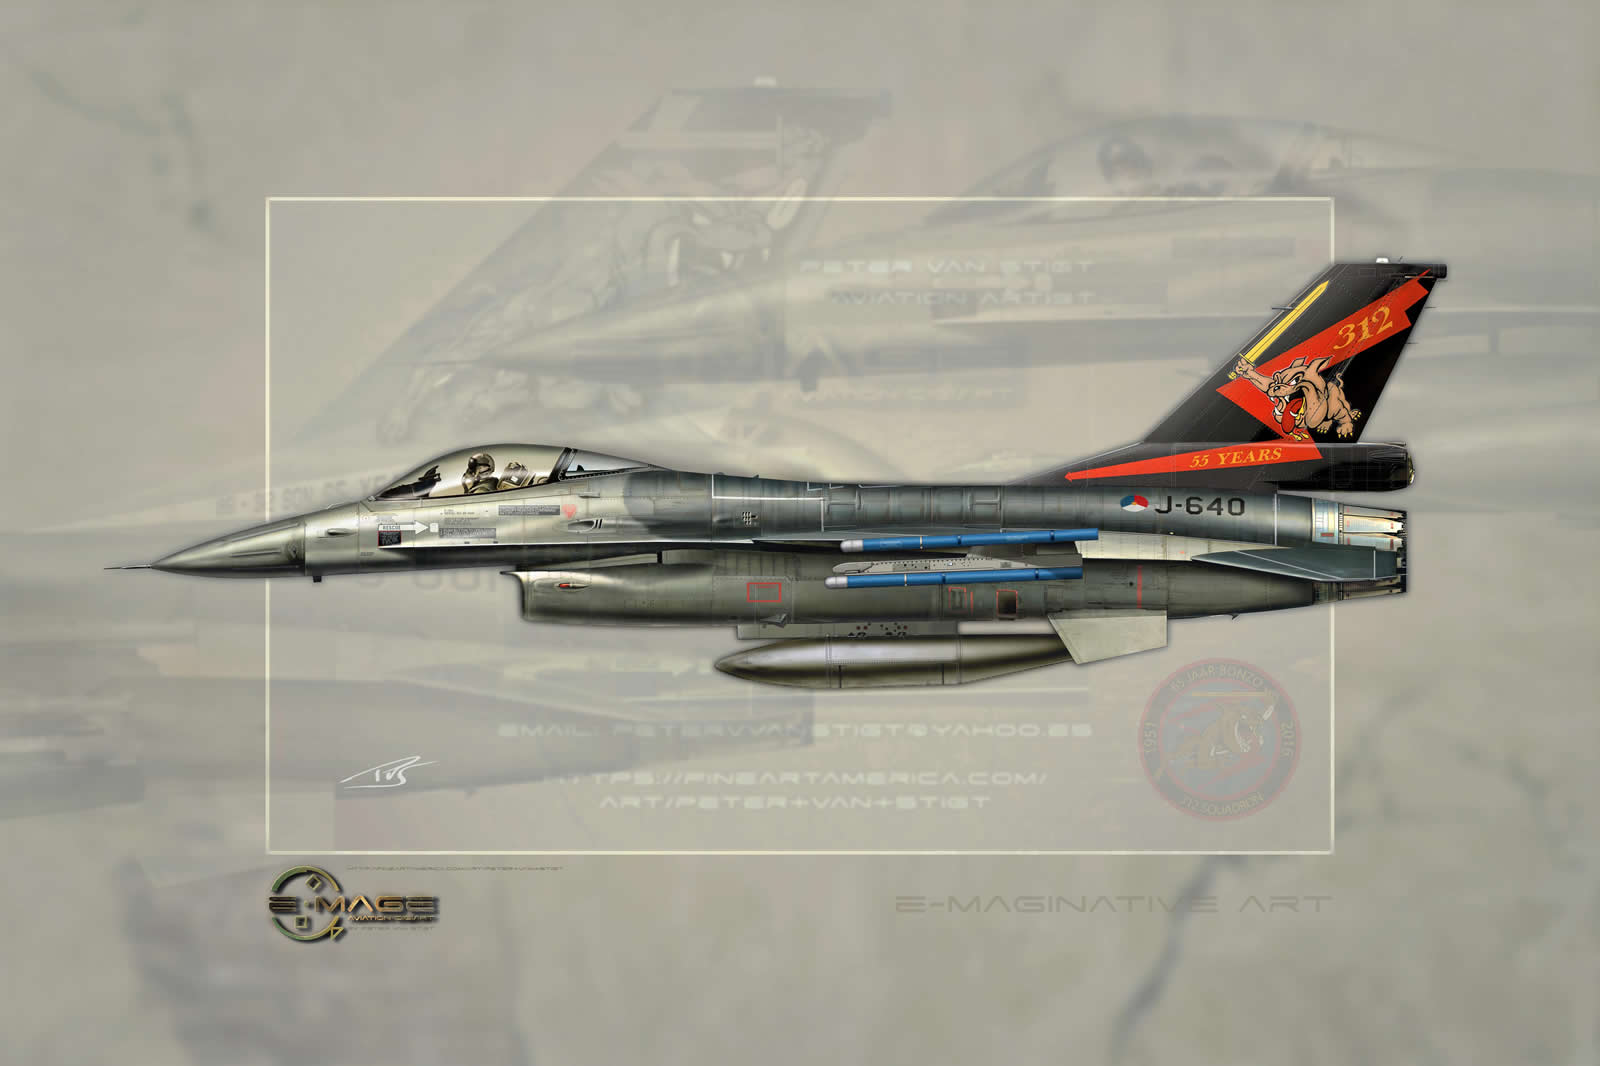 J-640 F-16 Profile